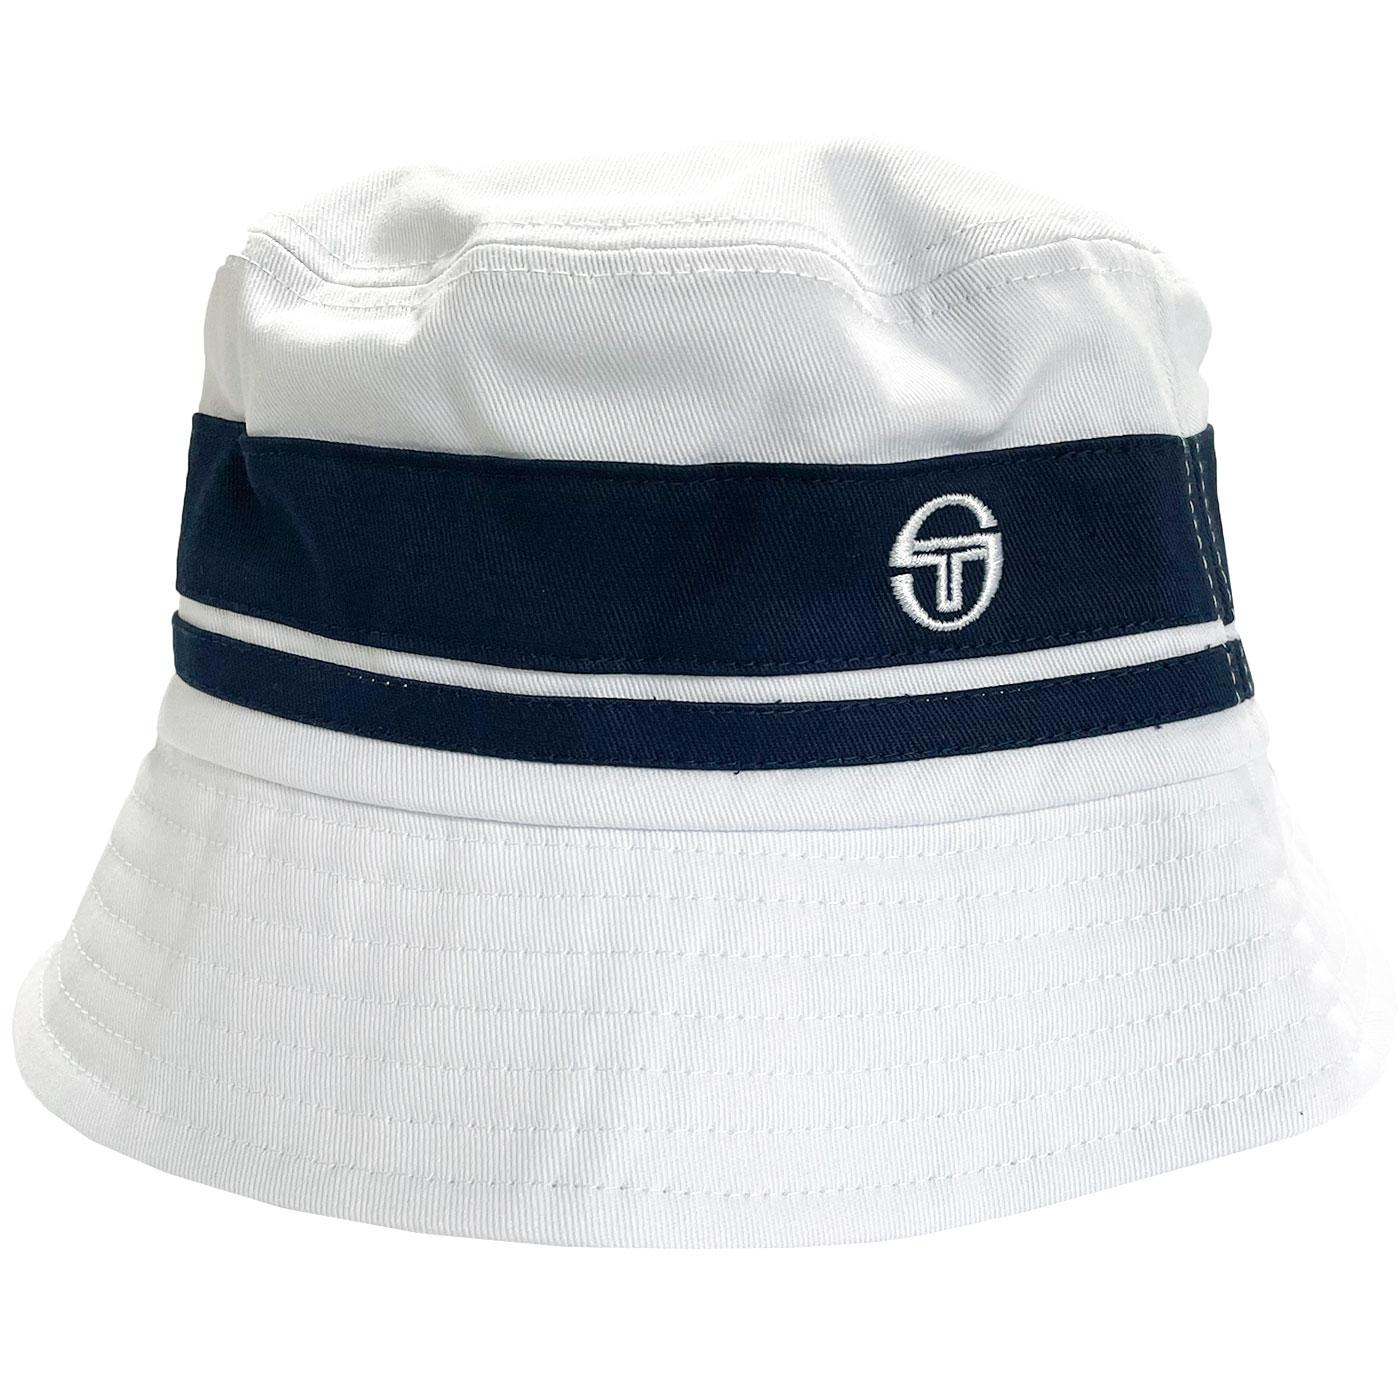 Newsford SERGIO TACCHINI Retro 90s Bucket Hat (W)